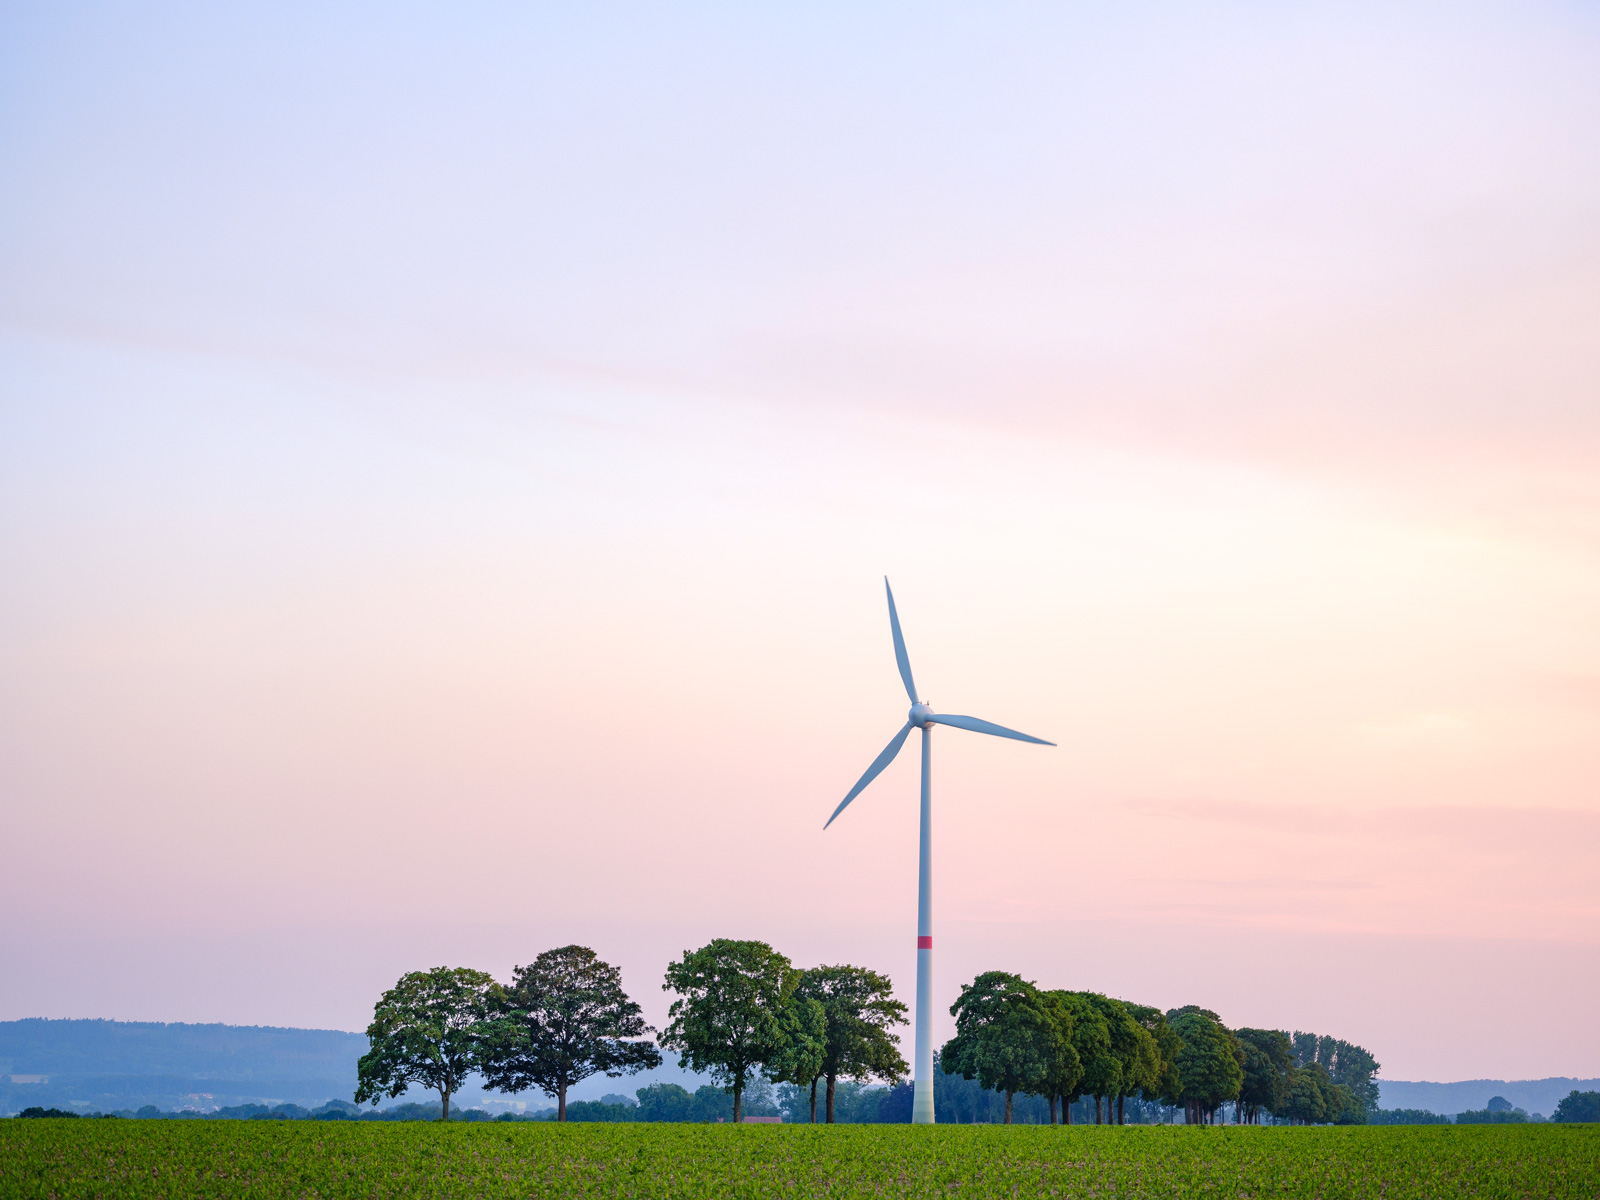 Wind turbine on an evening in June 2020 in 'Jöllenbeck' (Bielefeld, Germany).